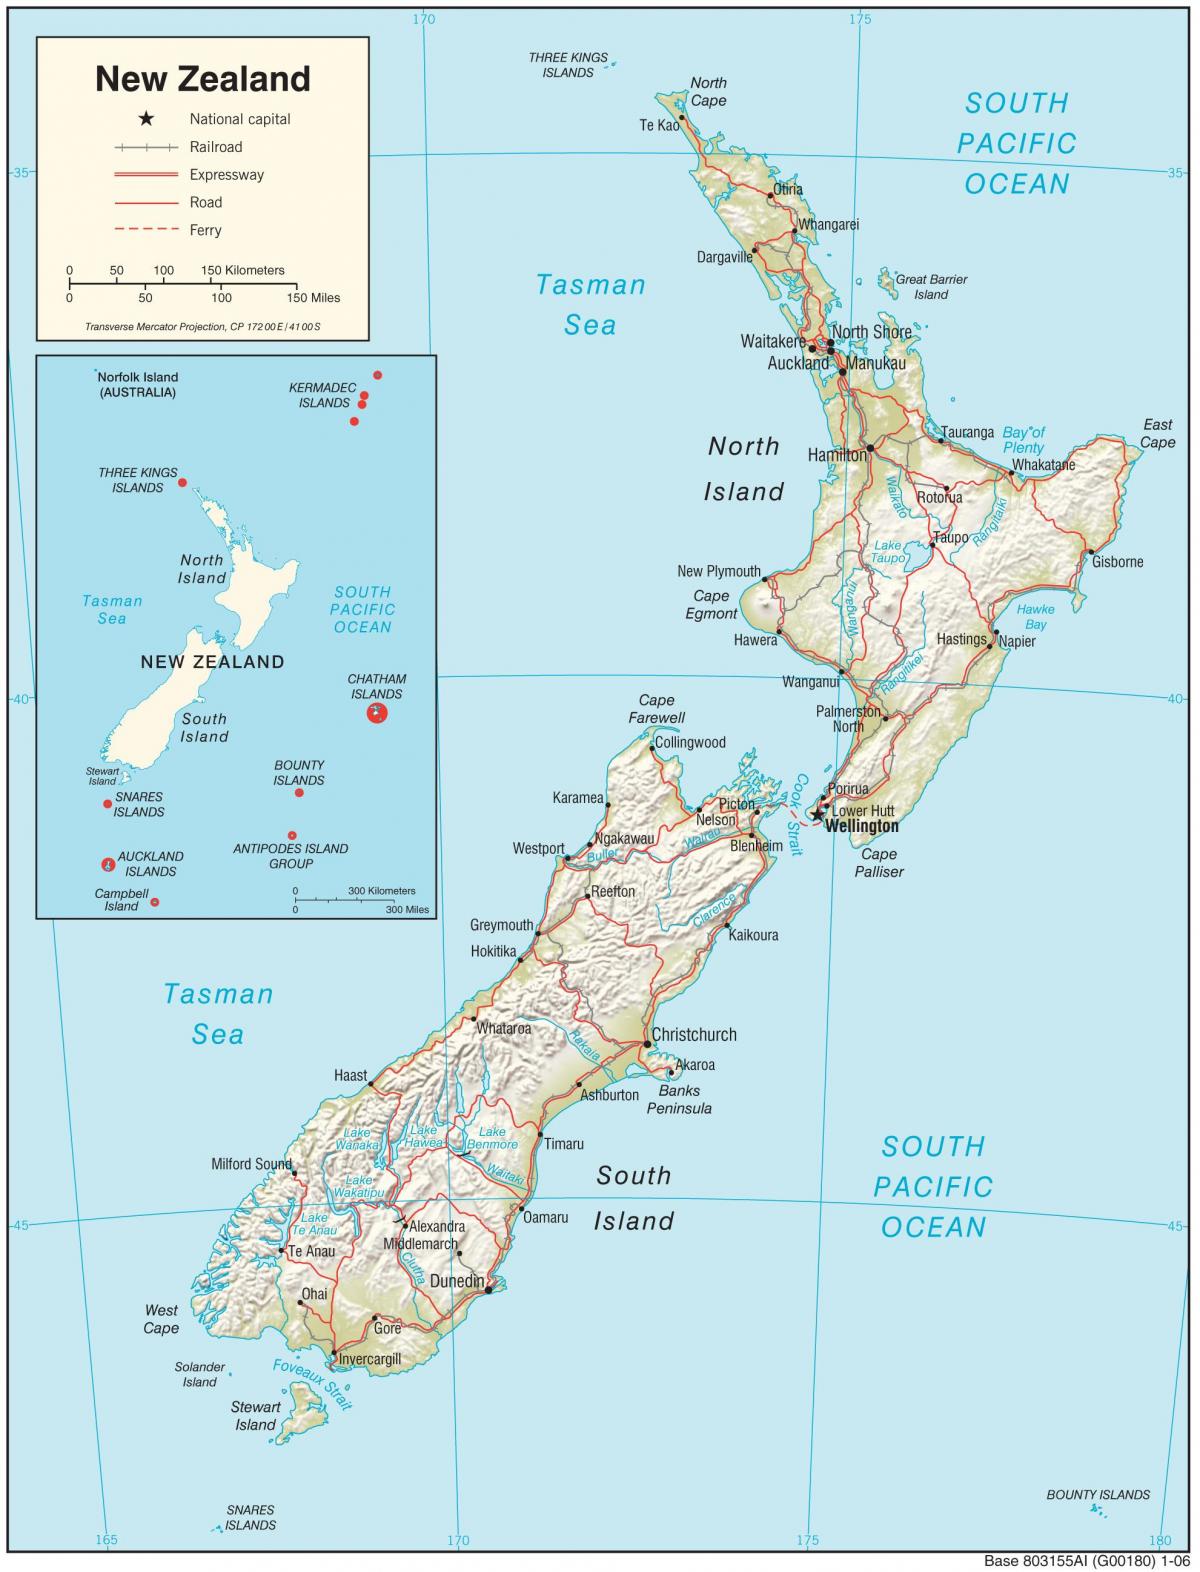 Mappa del paese Nuova Zelanda